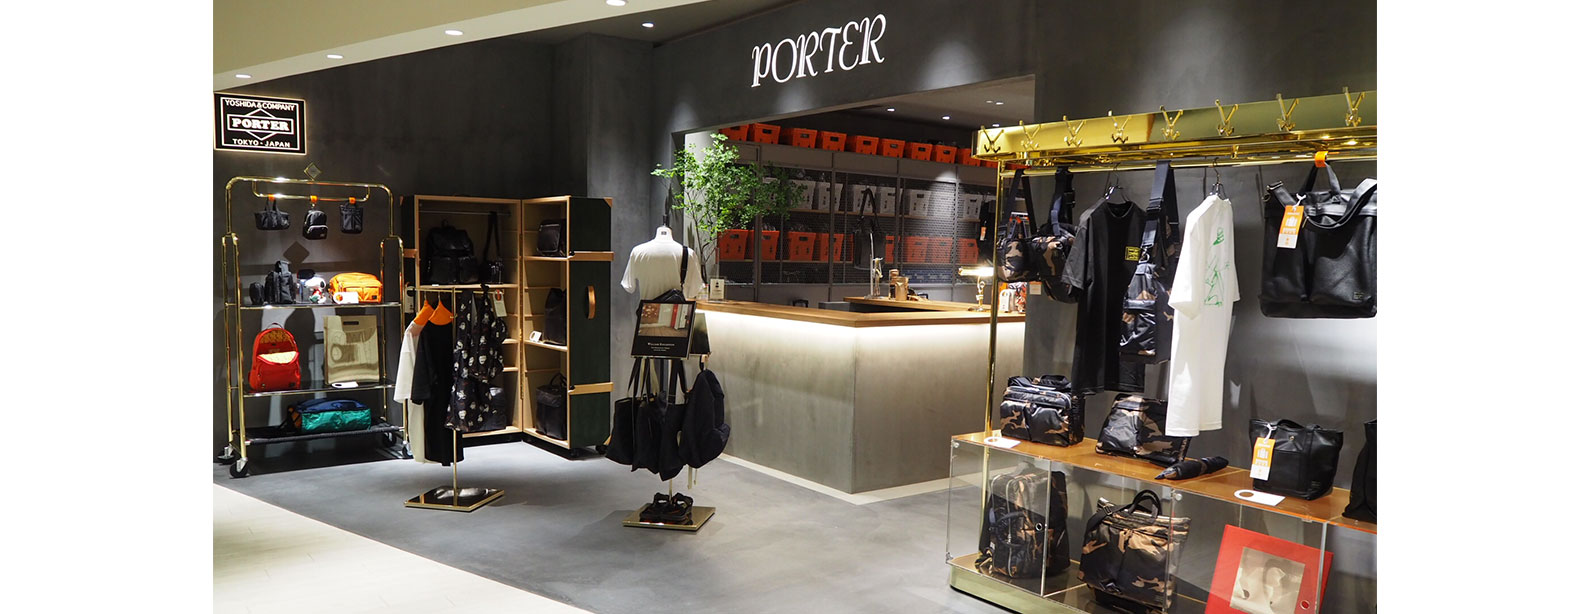 Porter Grand Front Osaka Shops Restaurants